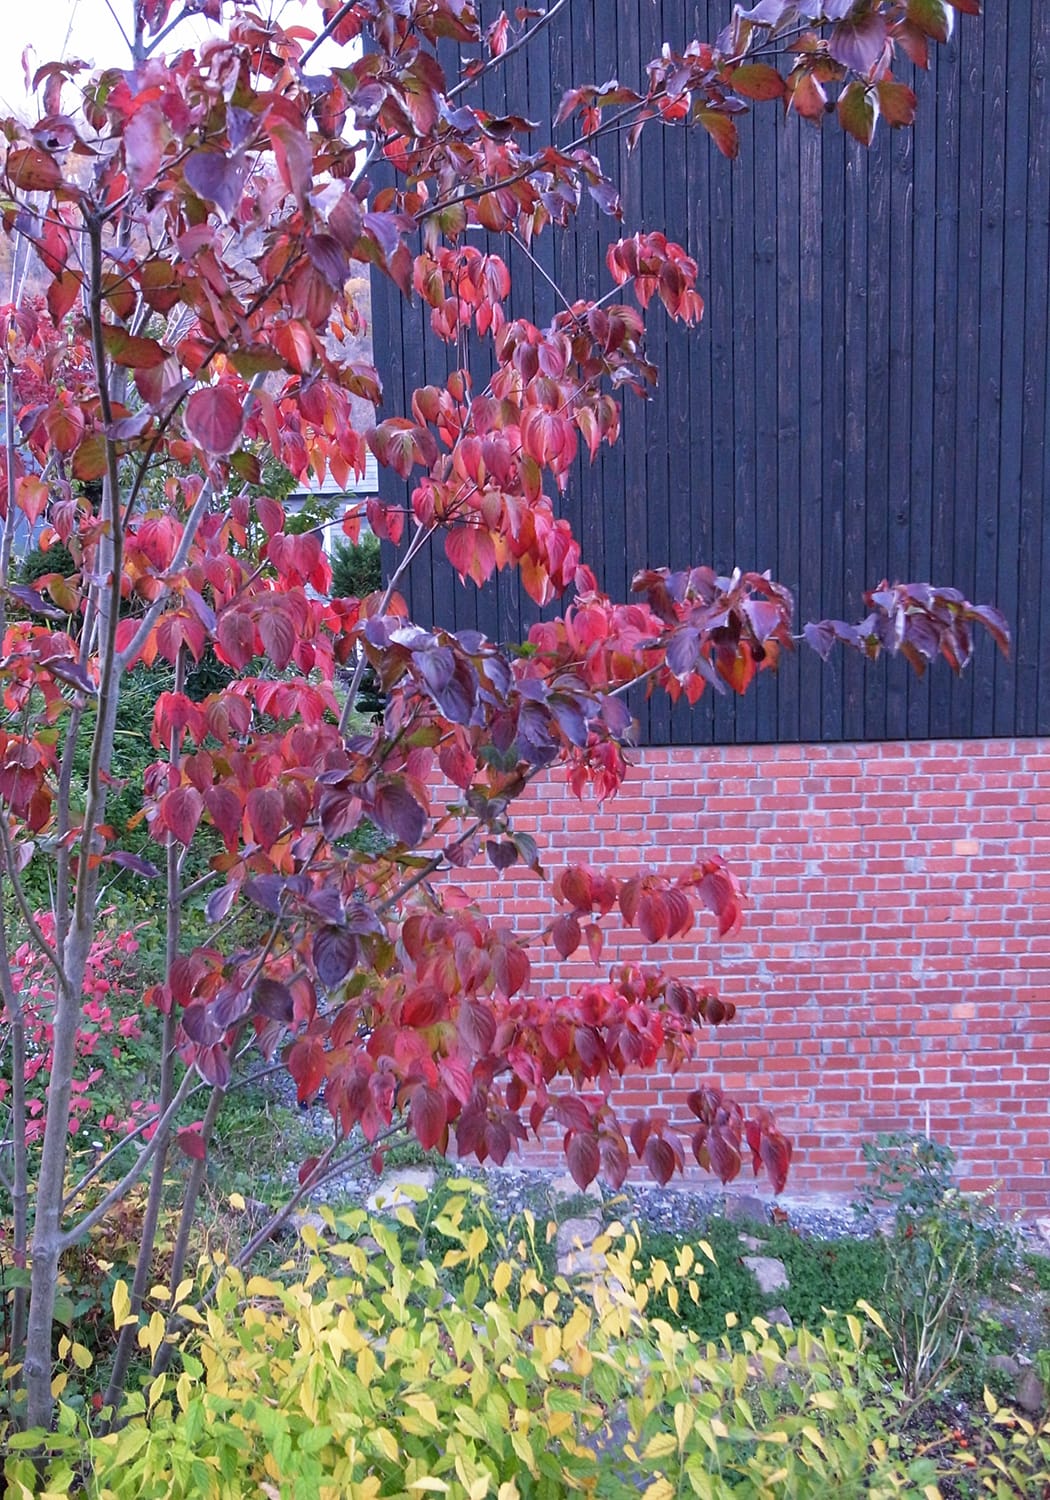 ヤマボウシの紅葉とヤマブキの黄葉と赤レンガと黒い板の壁